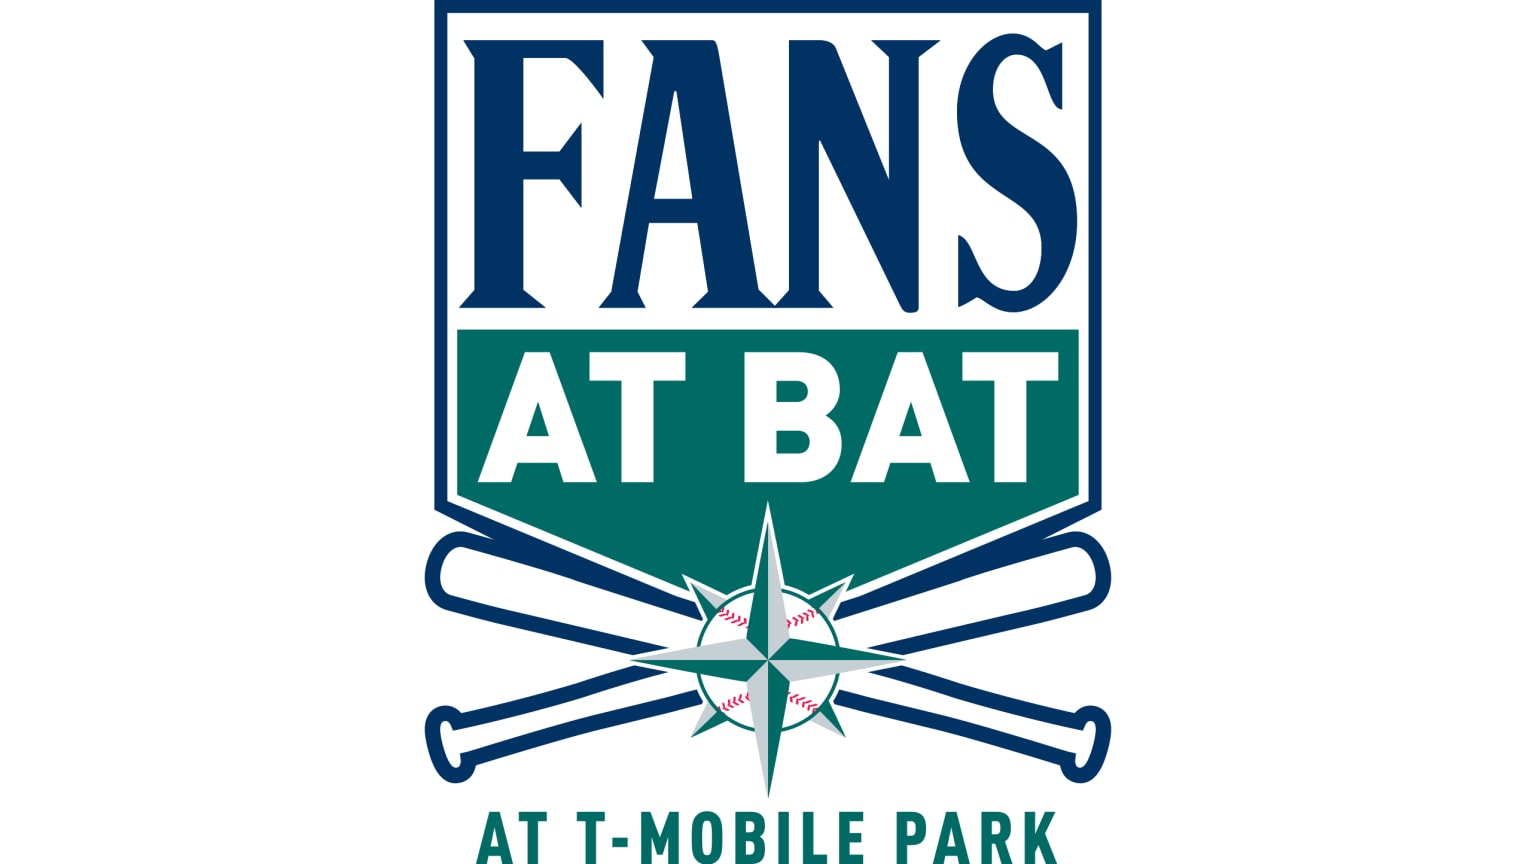 Fans at Bat at T-Mobile Park